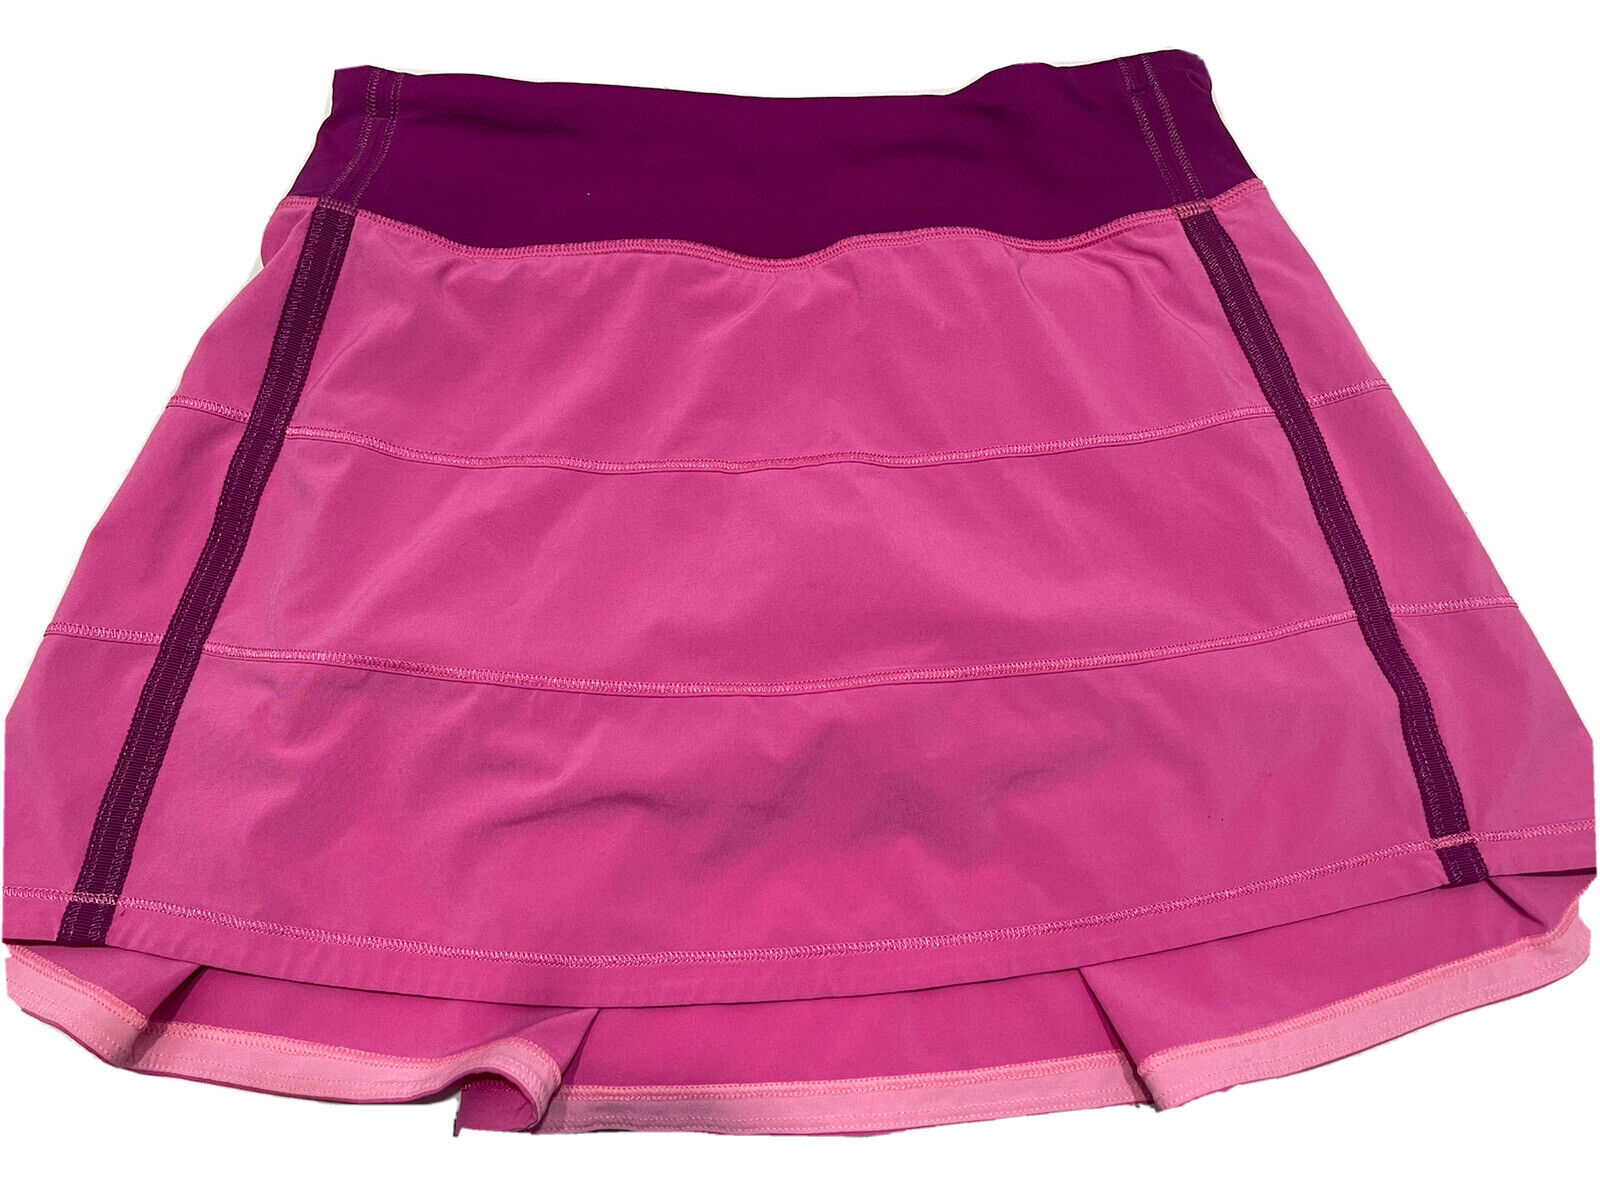 Lululemon pink tennis skirt - Gem